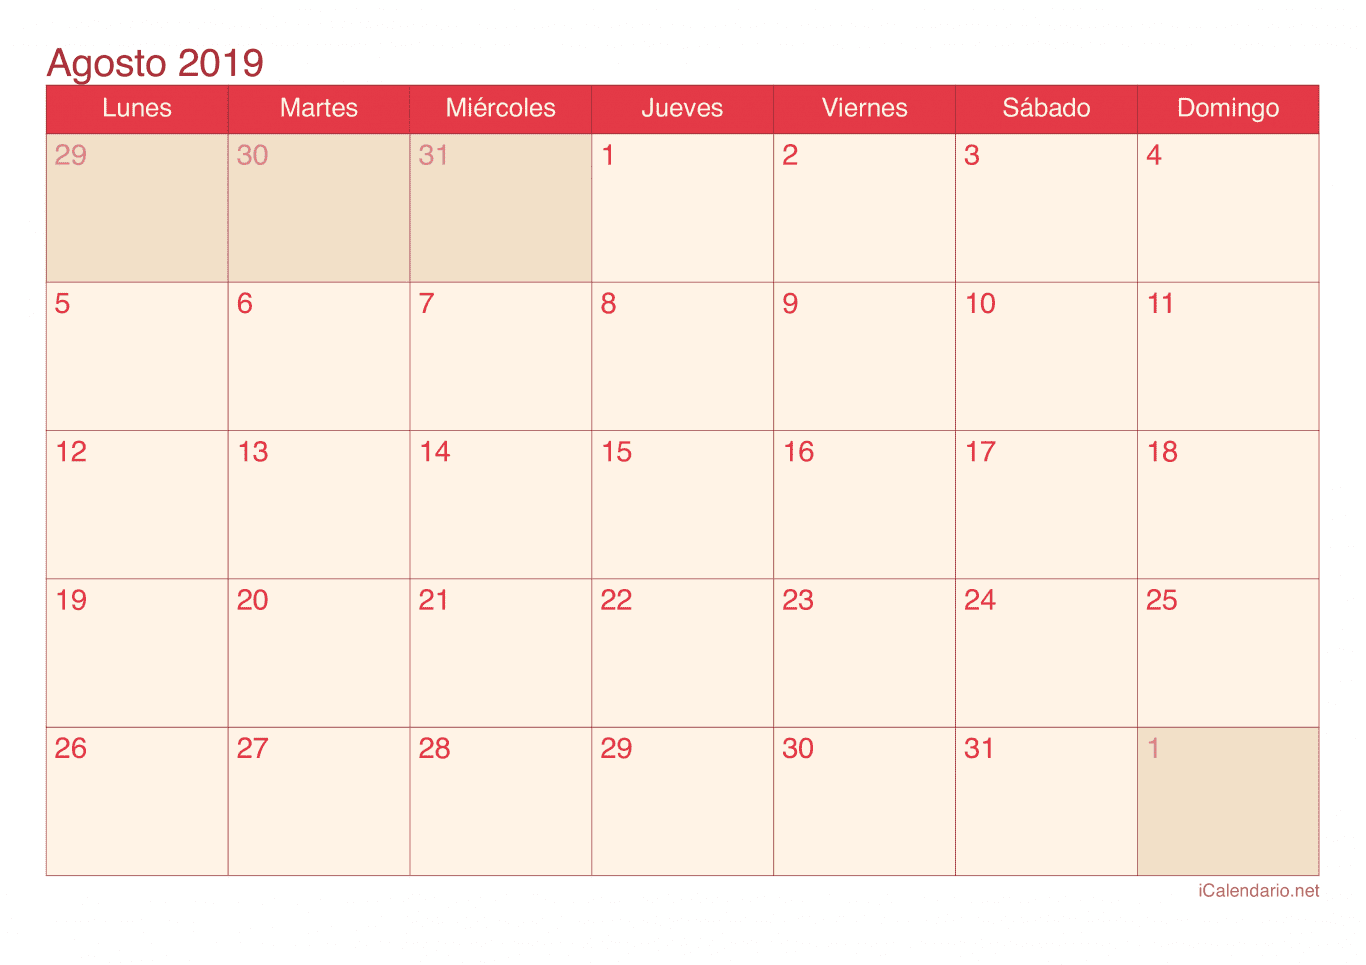 Calendario de agosto 2019 - Cherry